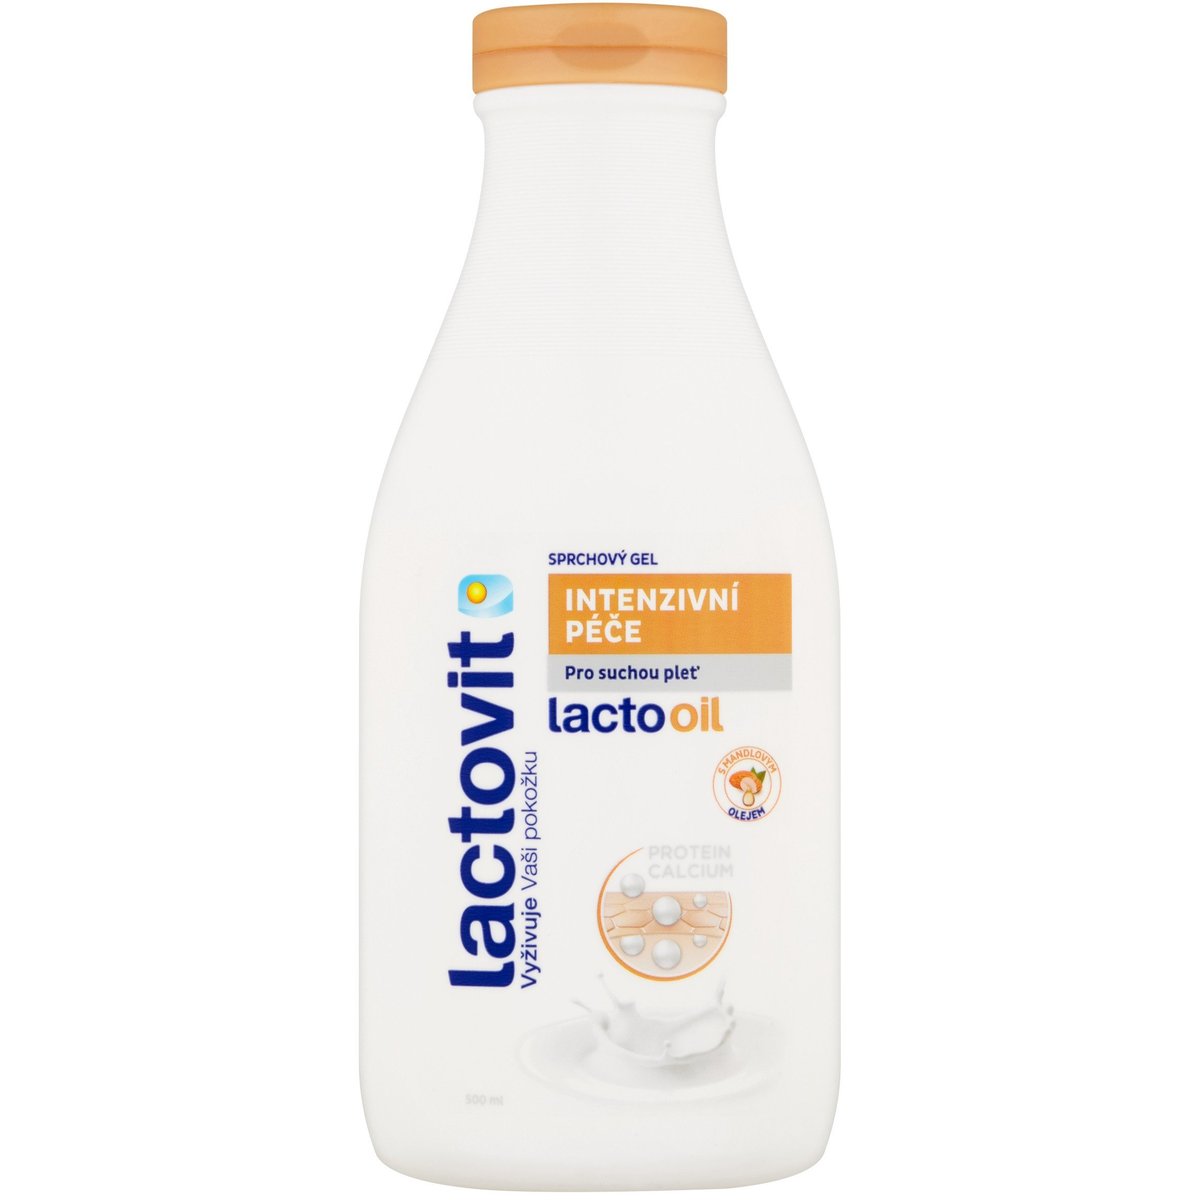 Lactovit Lactooil Sprchový gel Intenzivní péče pro suchou pleť